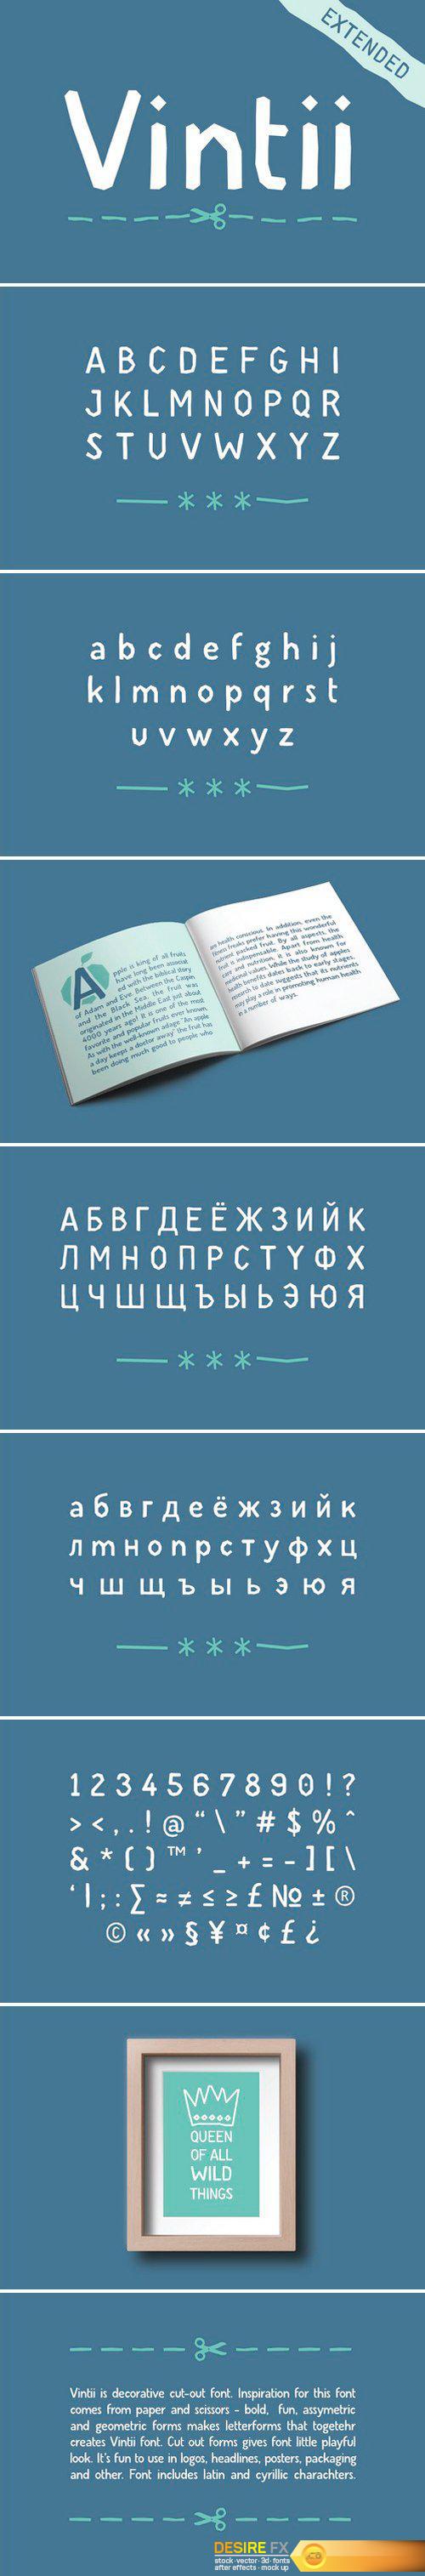 CM - Vintii extended font 2518969